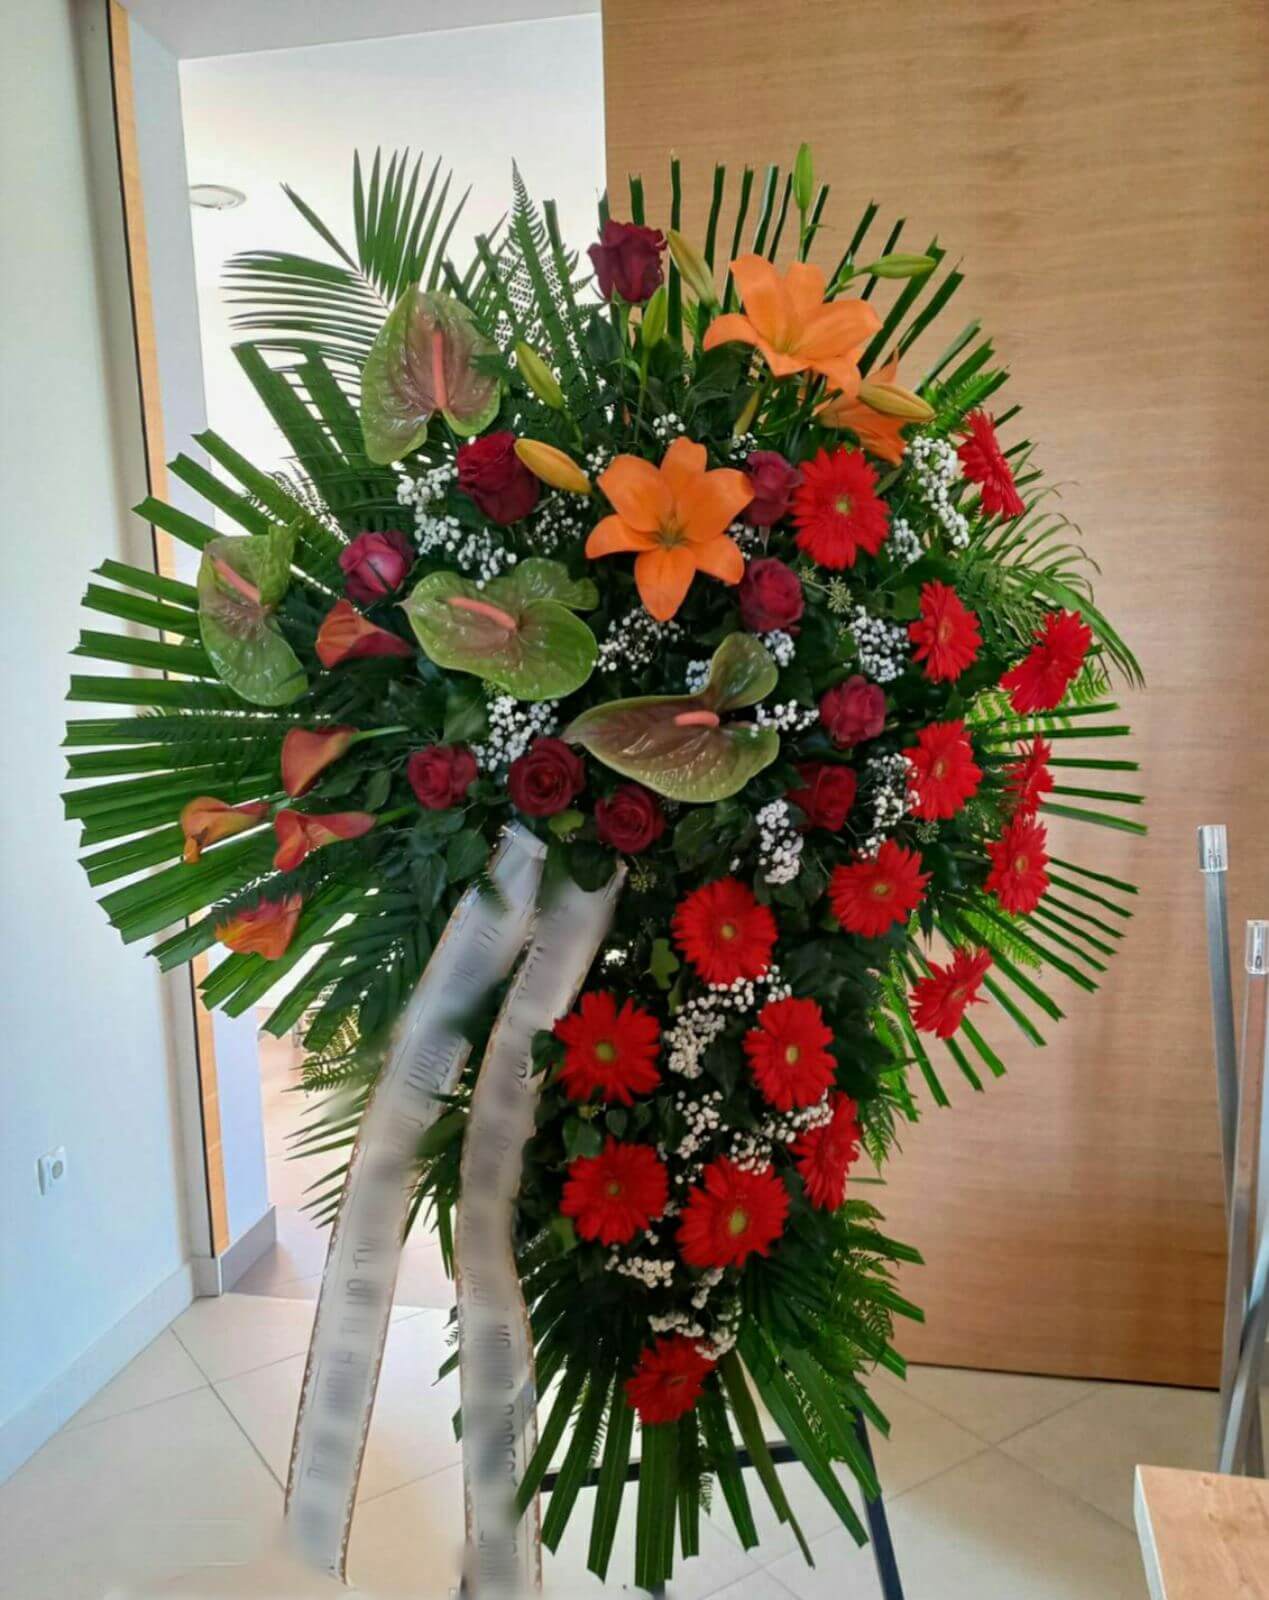 vijenac sa crvenim, narančastim i zelenim cvijećem